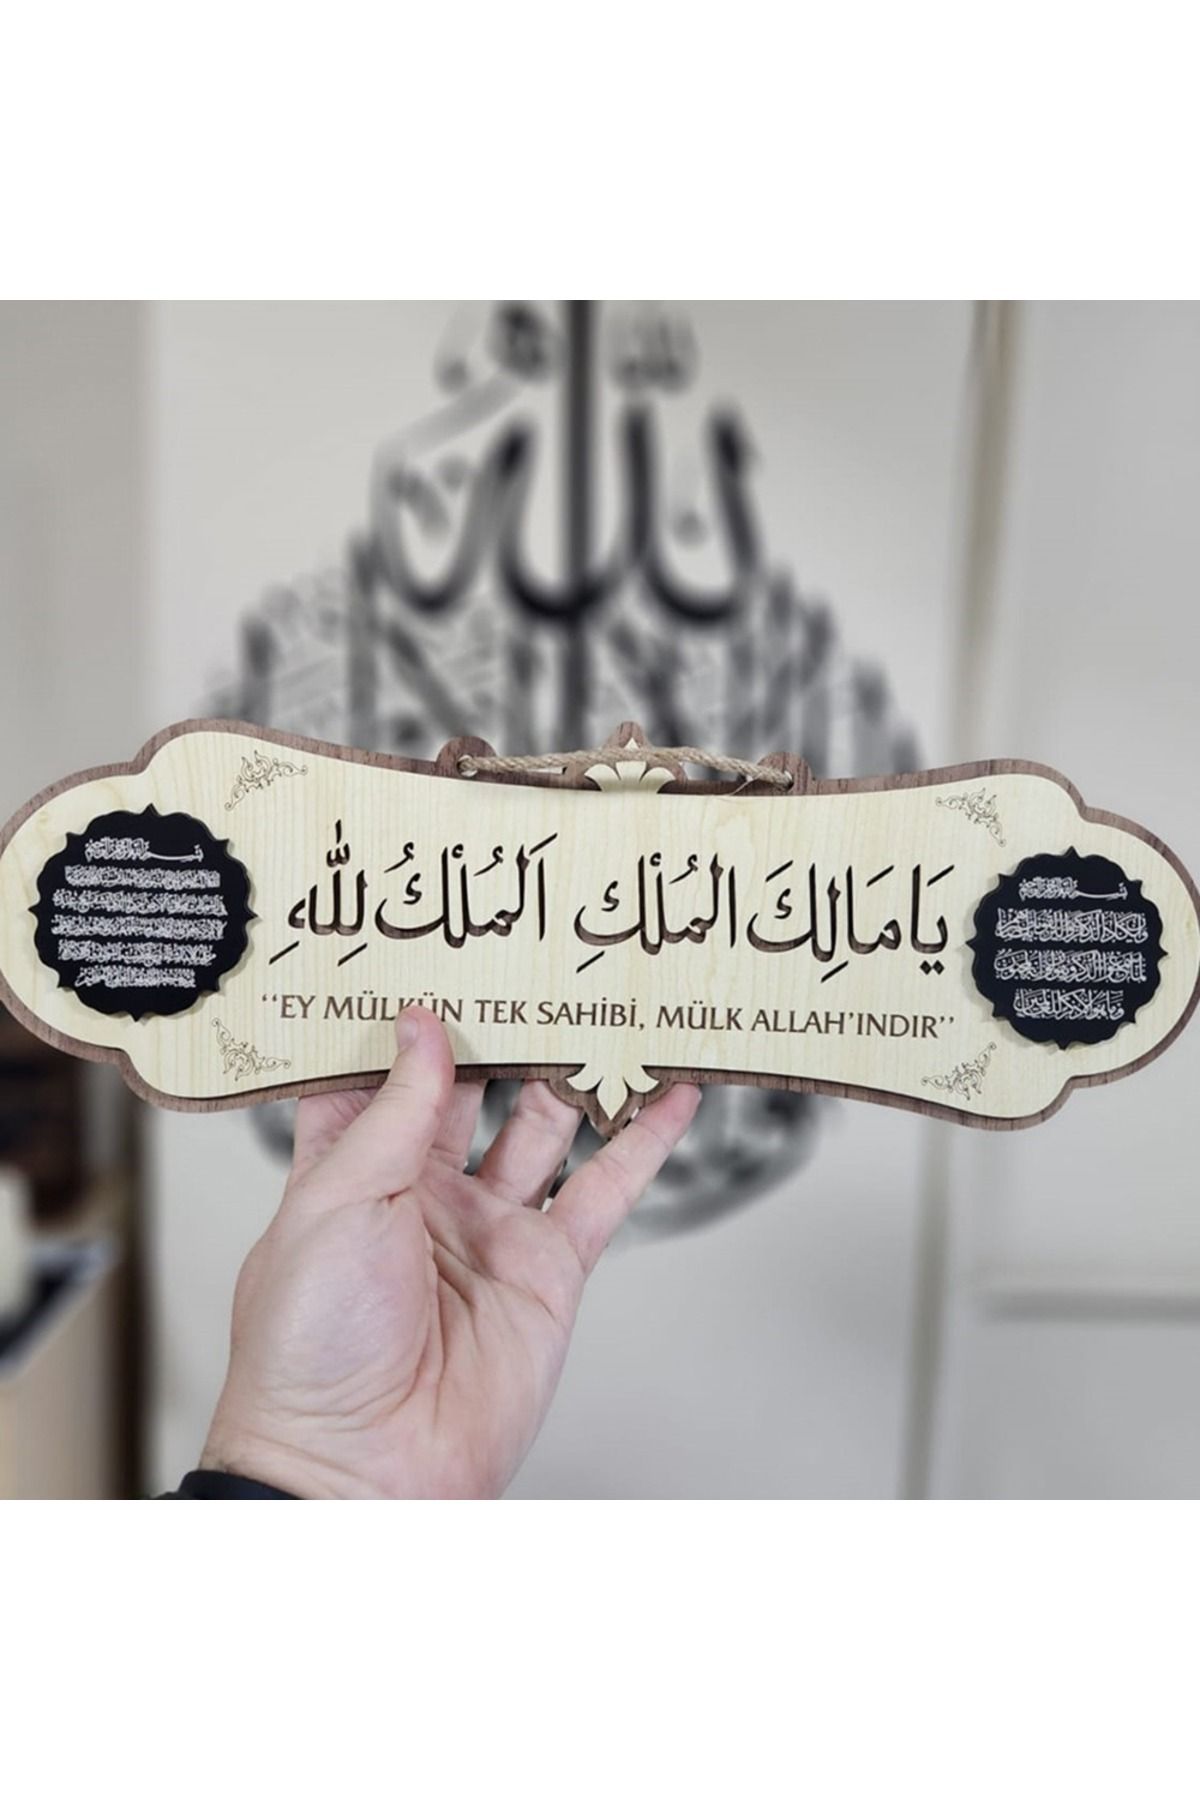 İkranur Malikel Mülk & Mülk Allah'ındır Türkçe Yazılı Bereket Ve Kelime-i Tevhid Dualı Tablo 40x14cm Ev Duas